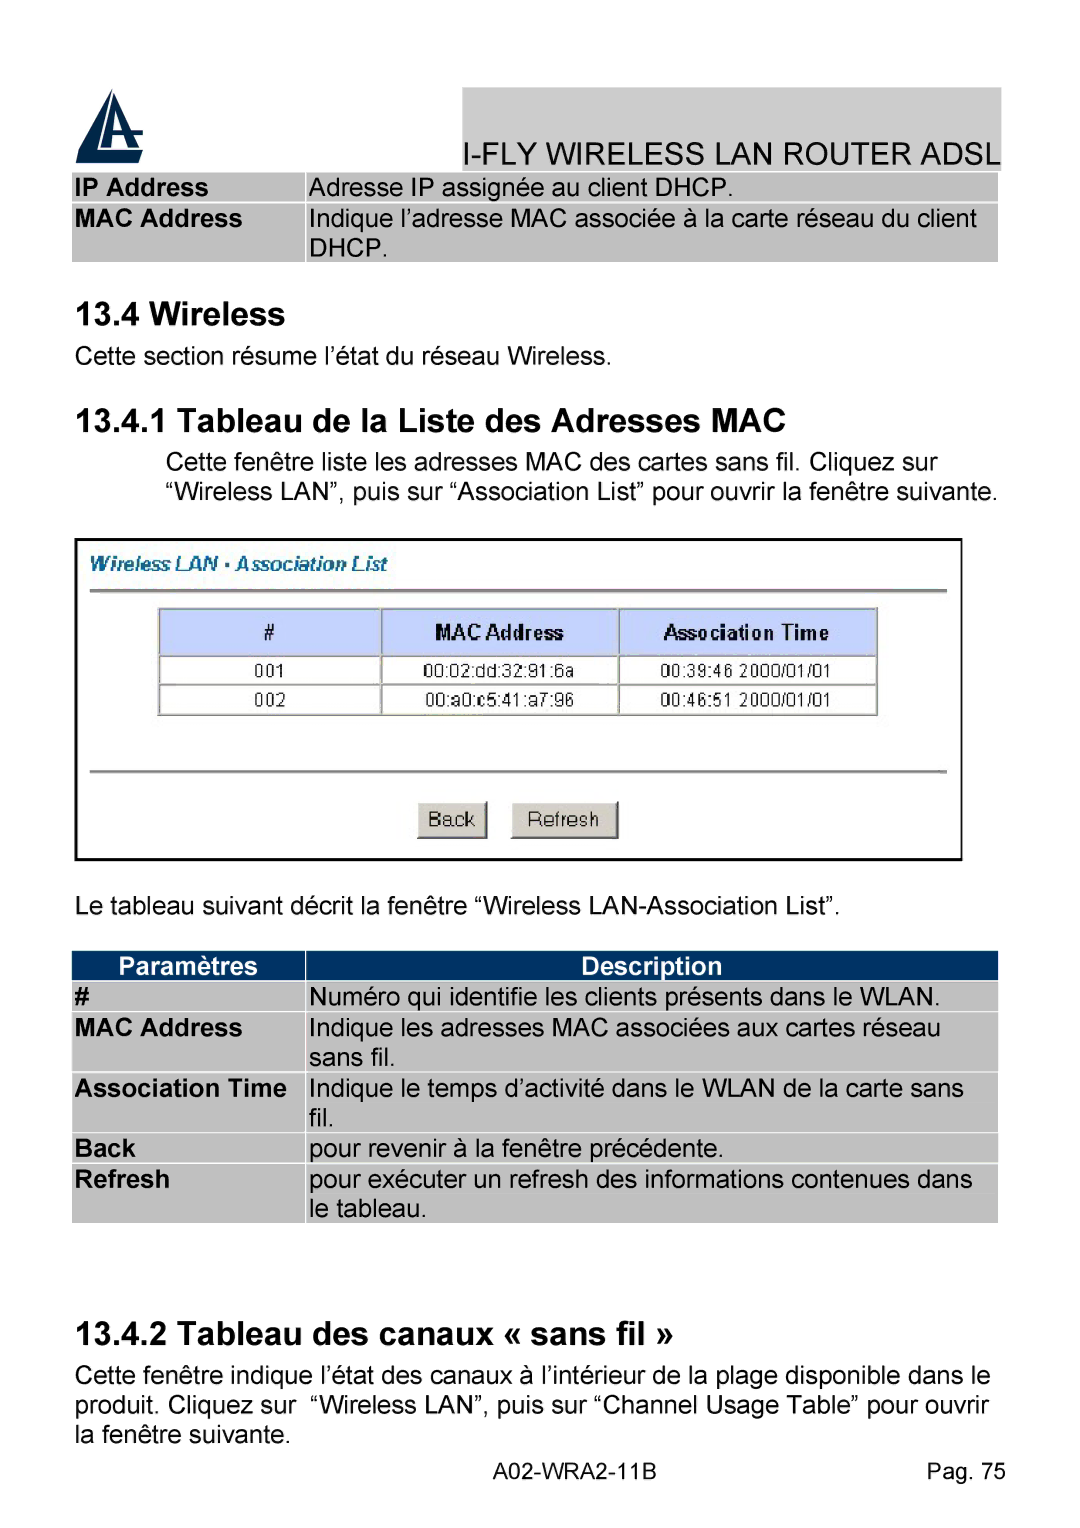 Bissell A02-WRA2-11B Wireless, Tableau de la Liste des Adresses MAC, Tableau des canaux « sans fil », Association Time 